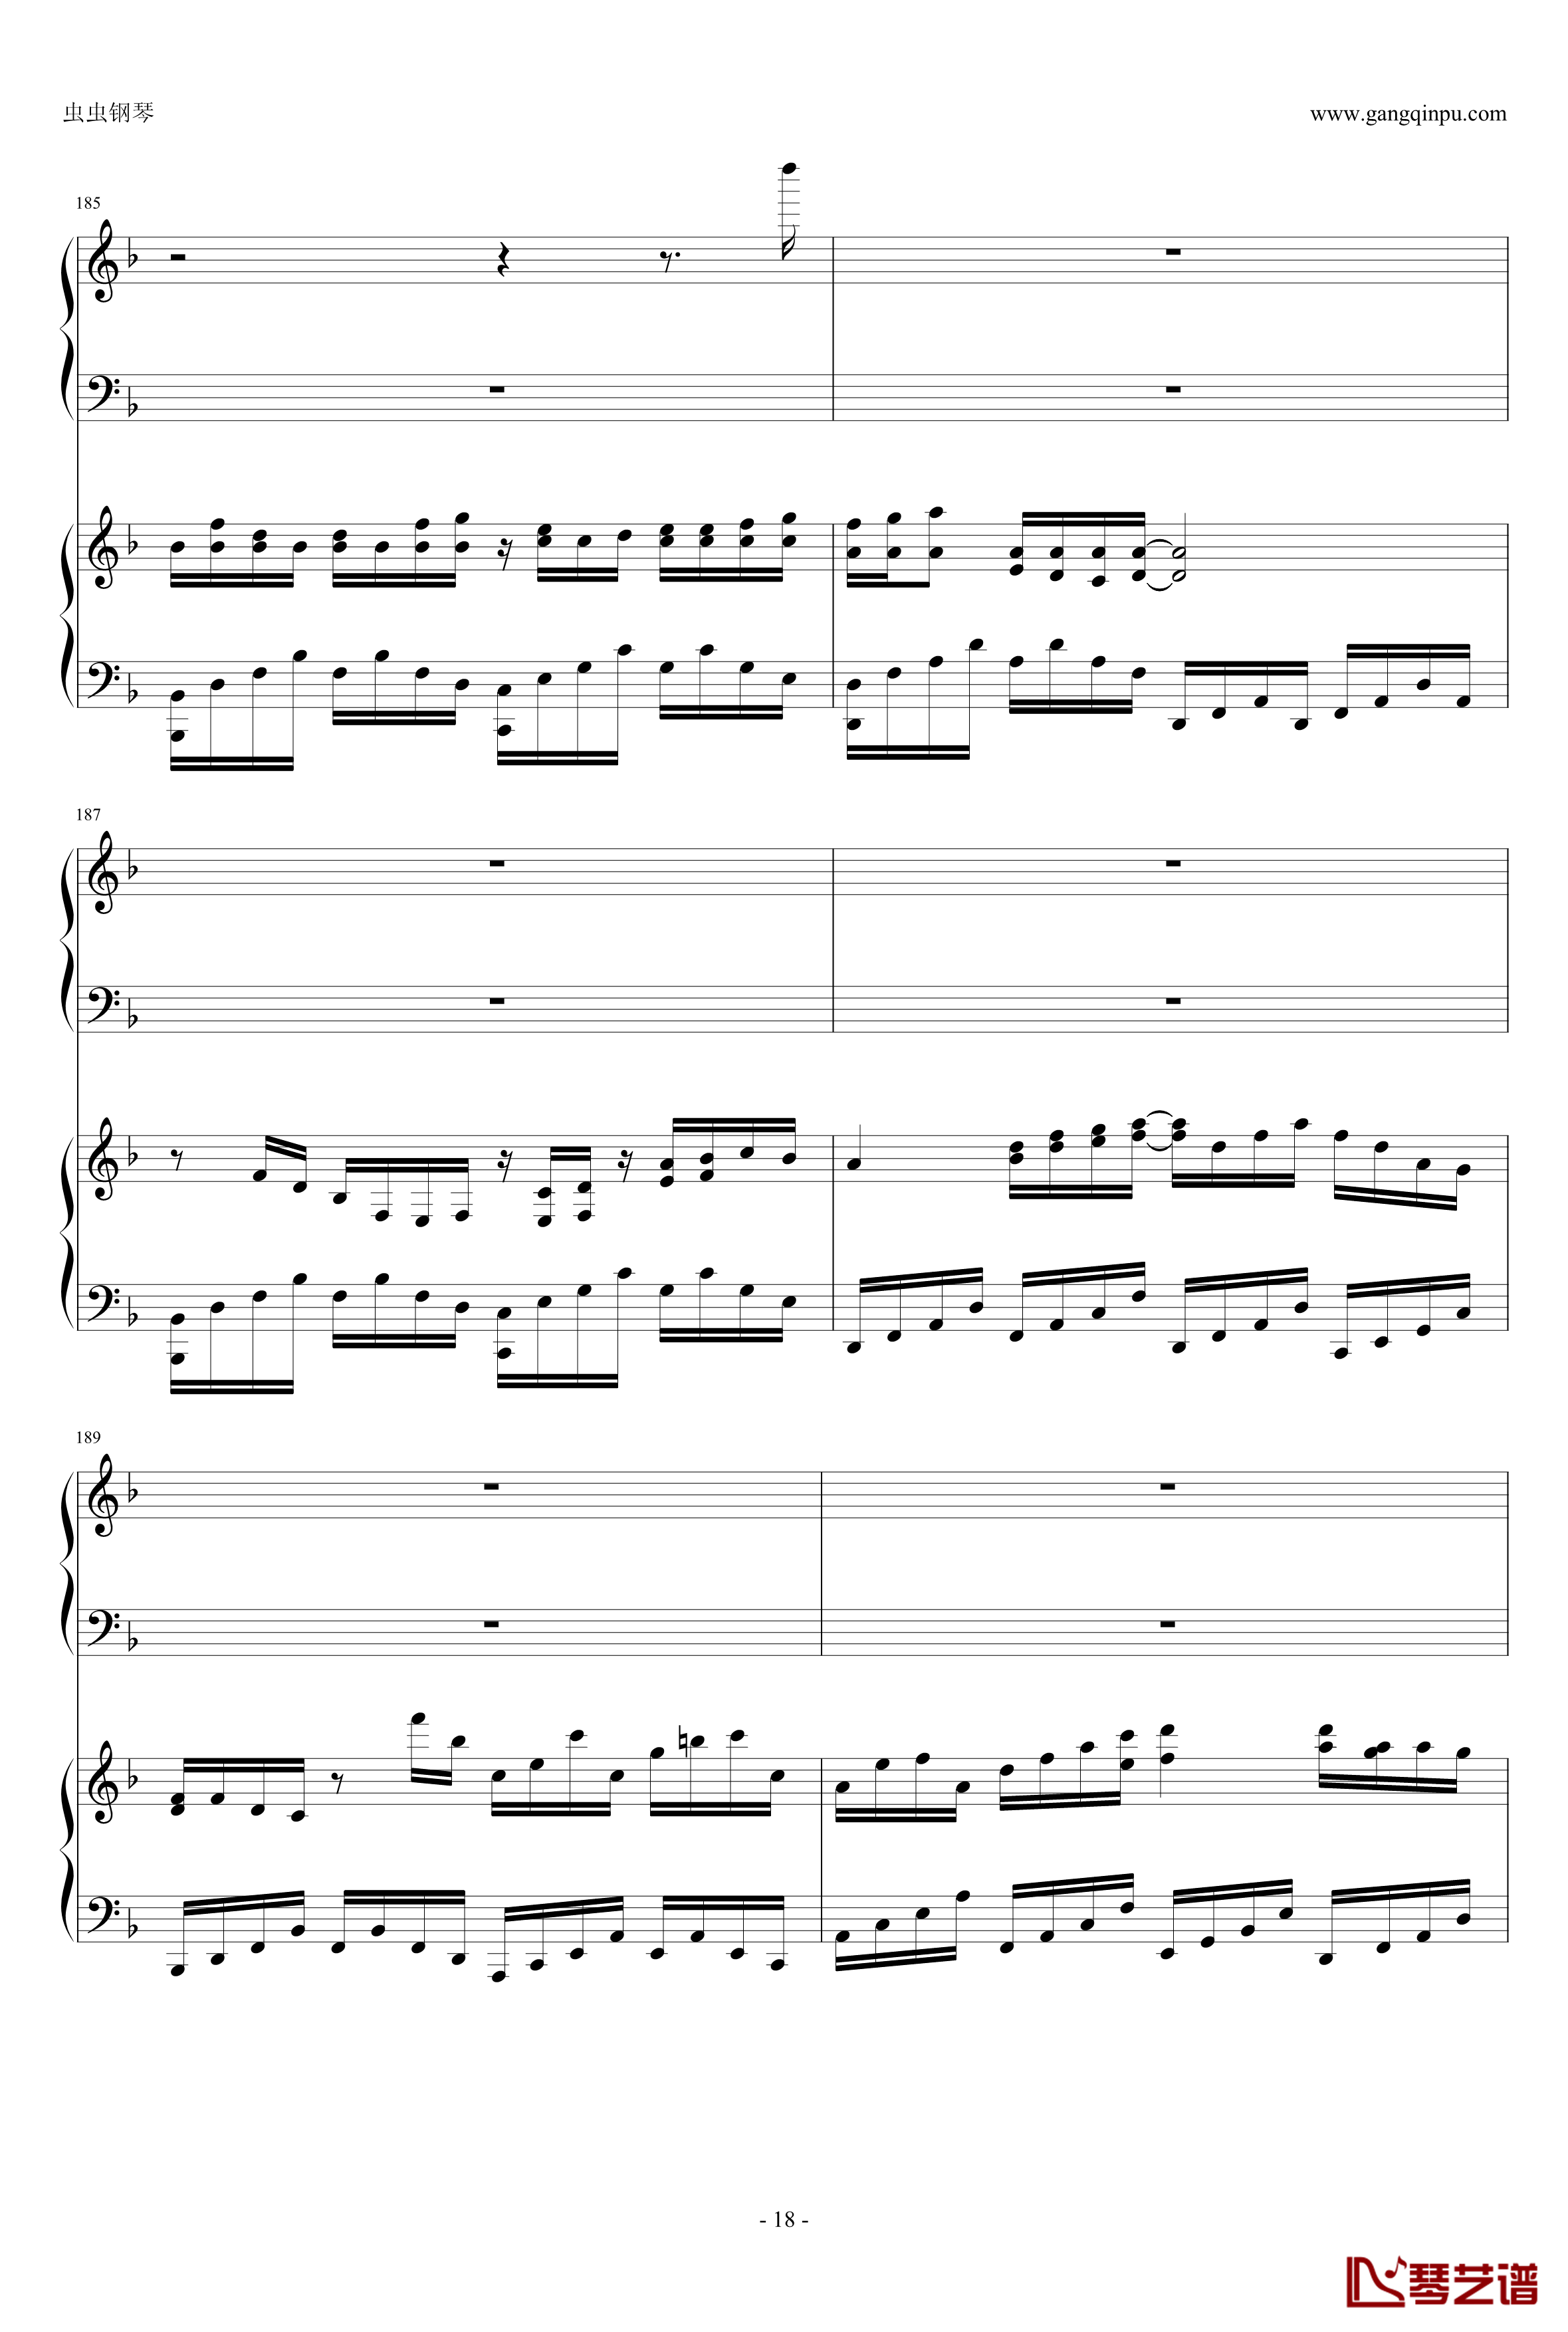 東方連奏曲II Pianoforte钢琴谱-第一部分-东方project18